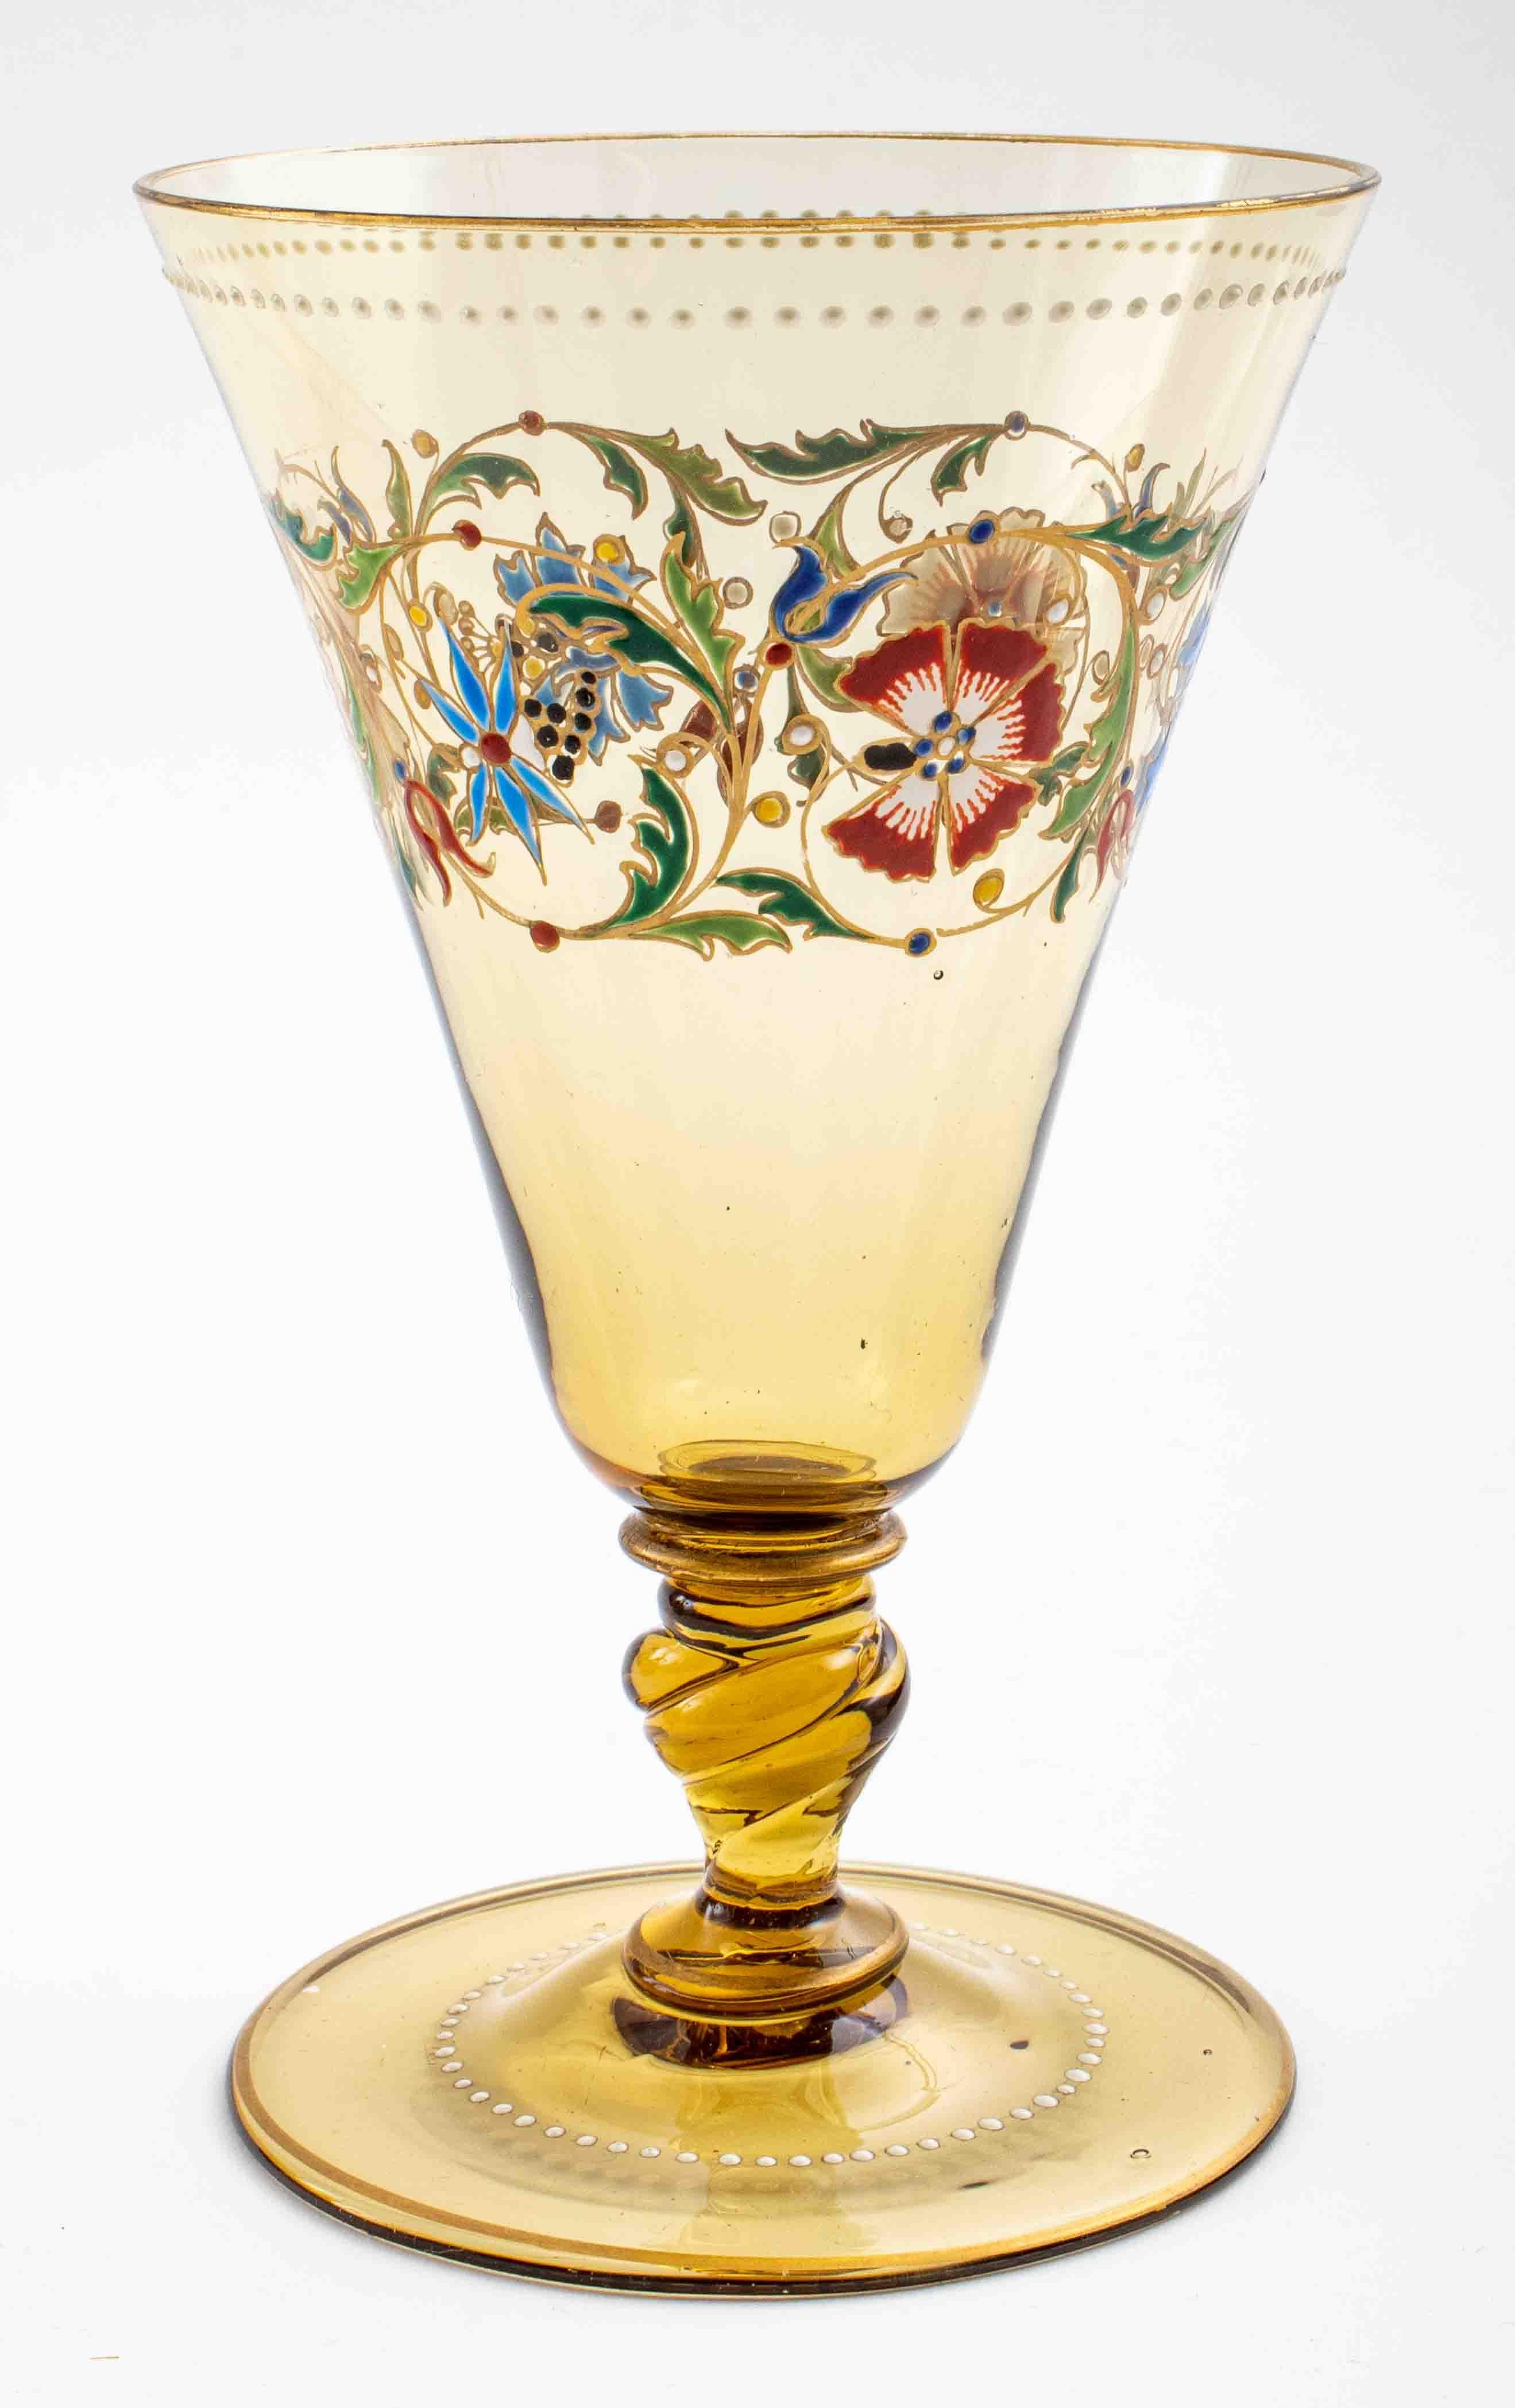 Deux carafes et un gobelet en verre de cristal de Bohème émaillé peint, non marqués. 9.5